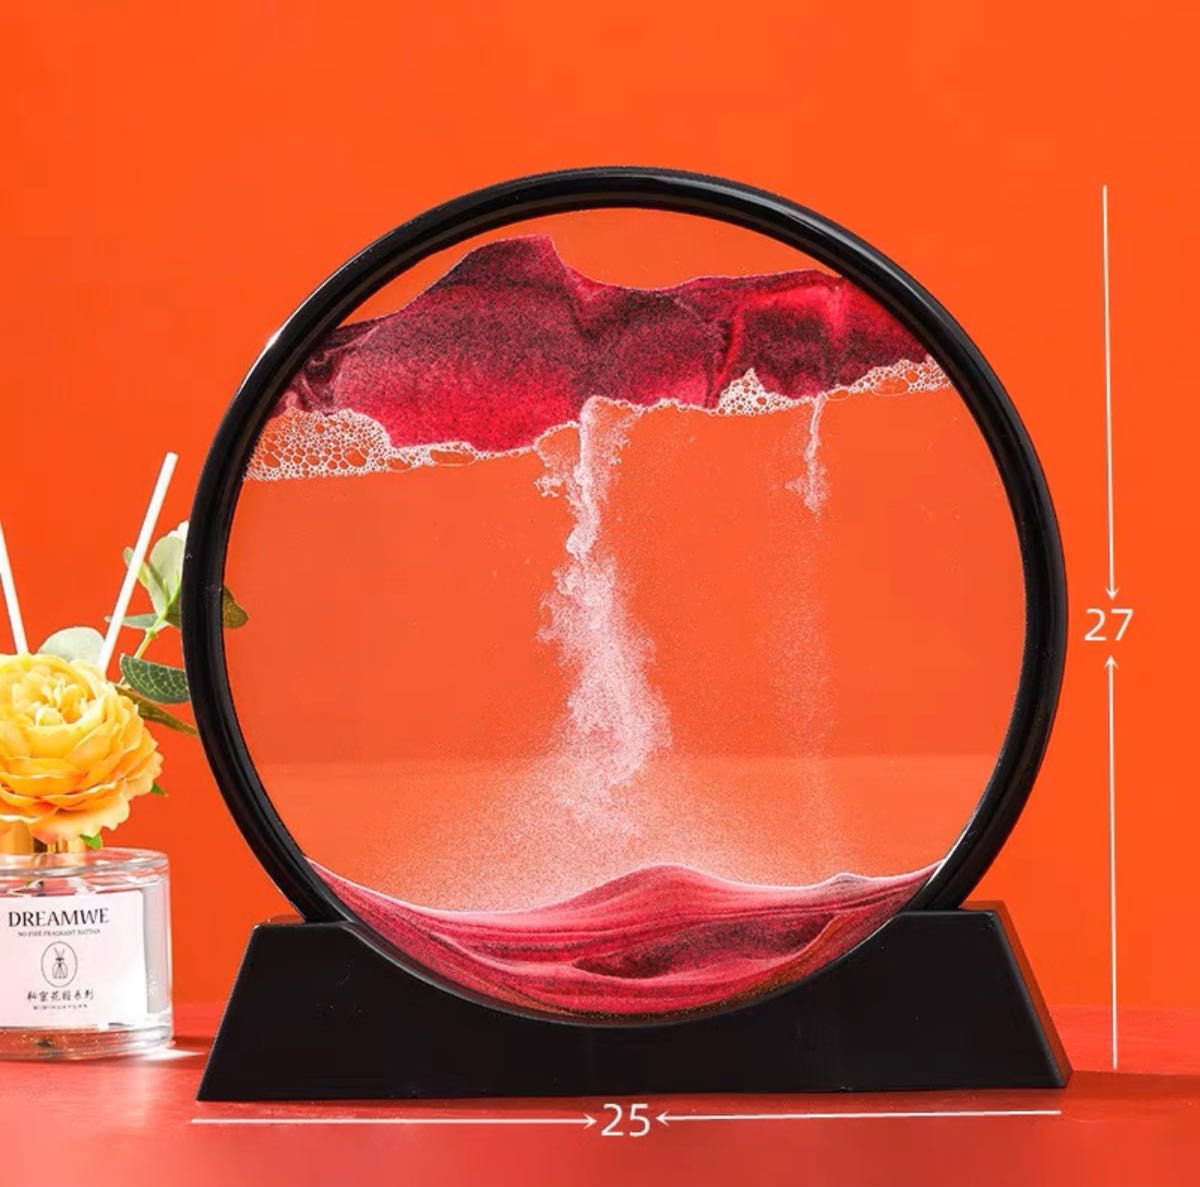 サンドピクチャー 砂の絵 3D サンドアートピクチャー サンドアート 砂動く砂のアート飾り置物面白い3D抽象的な風景オフィスの装飾